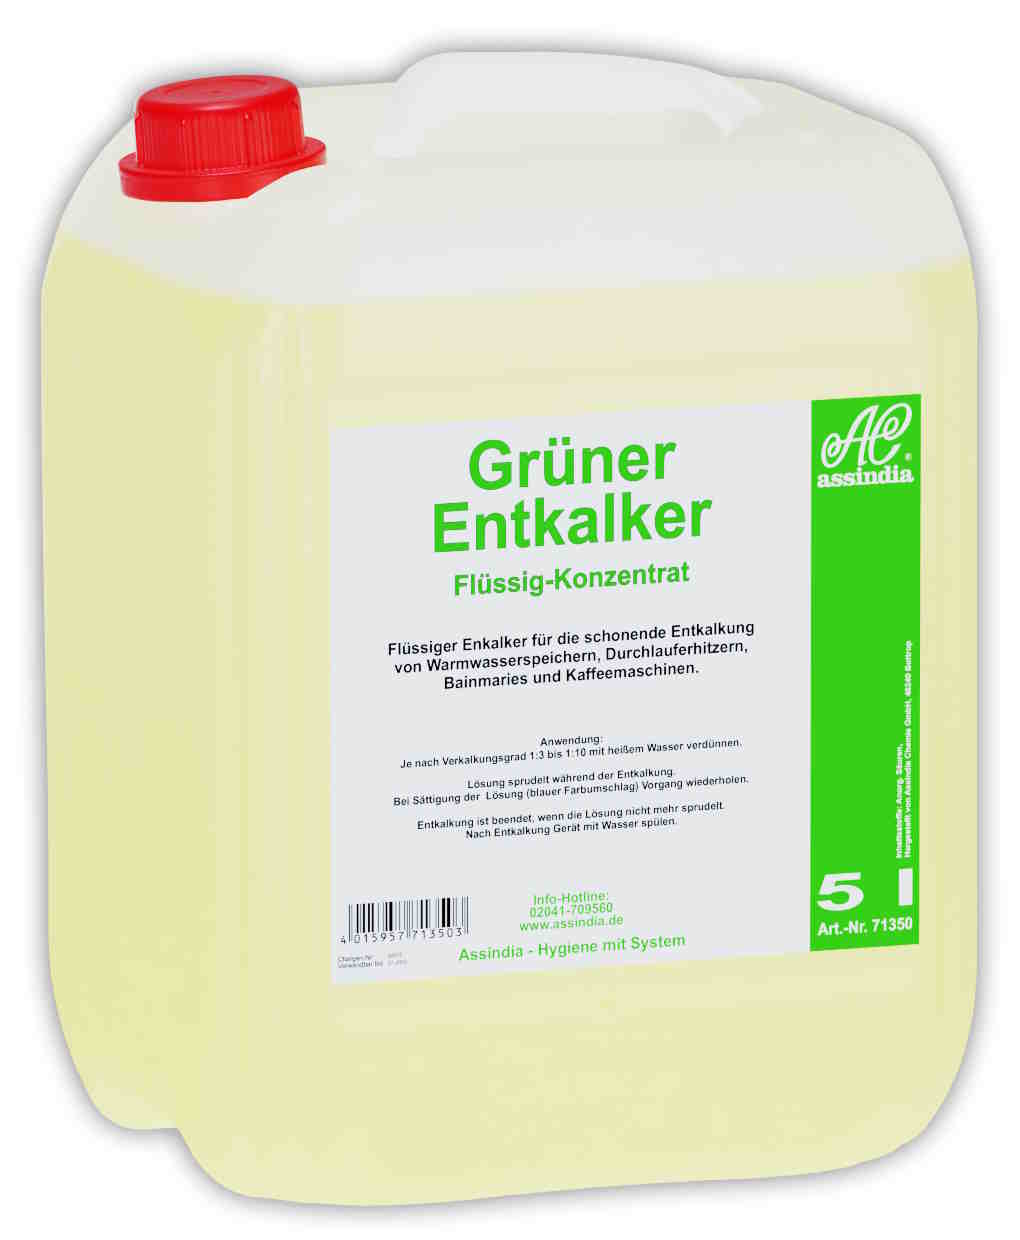 Grüner Entkalker flüssiges Konzentrat | 5 Liter Kanister